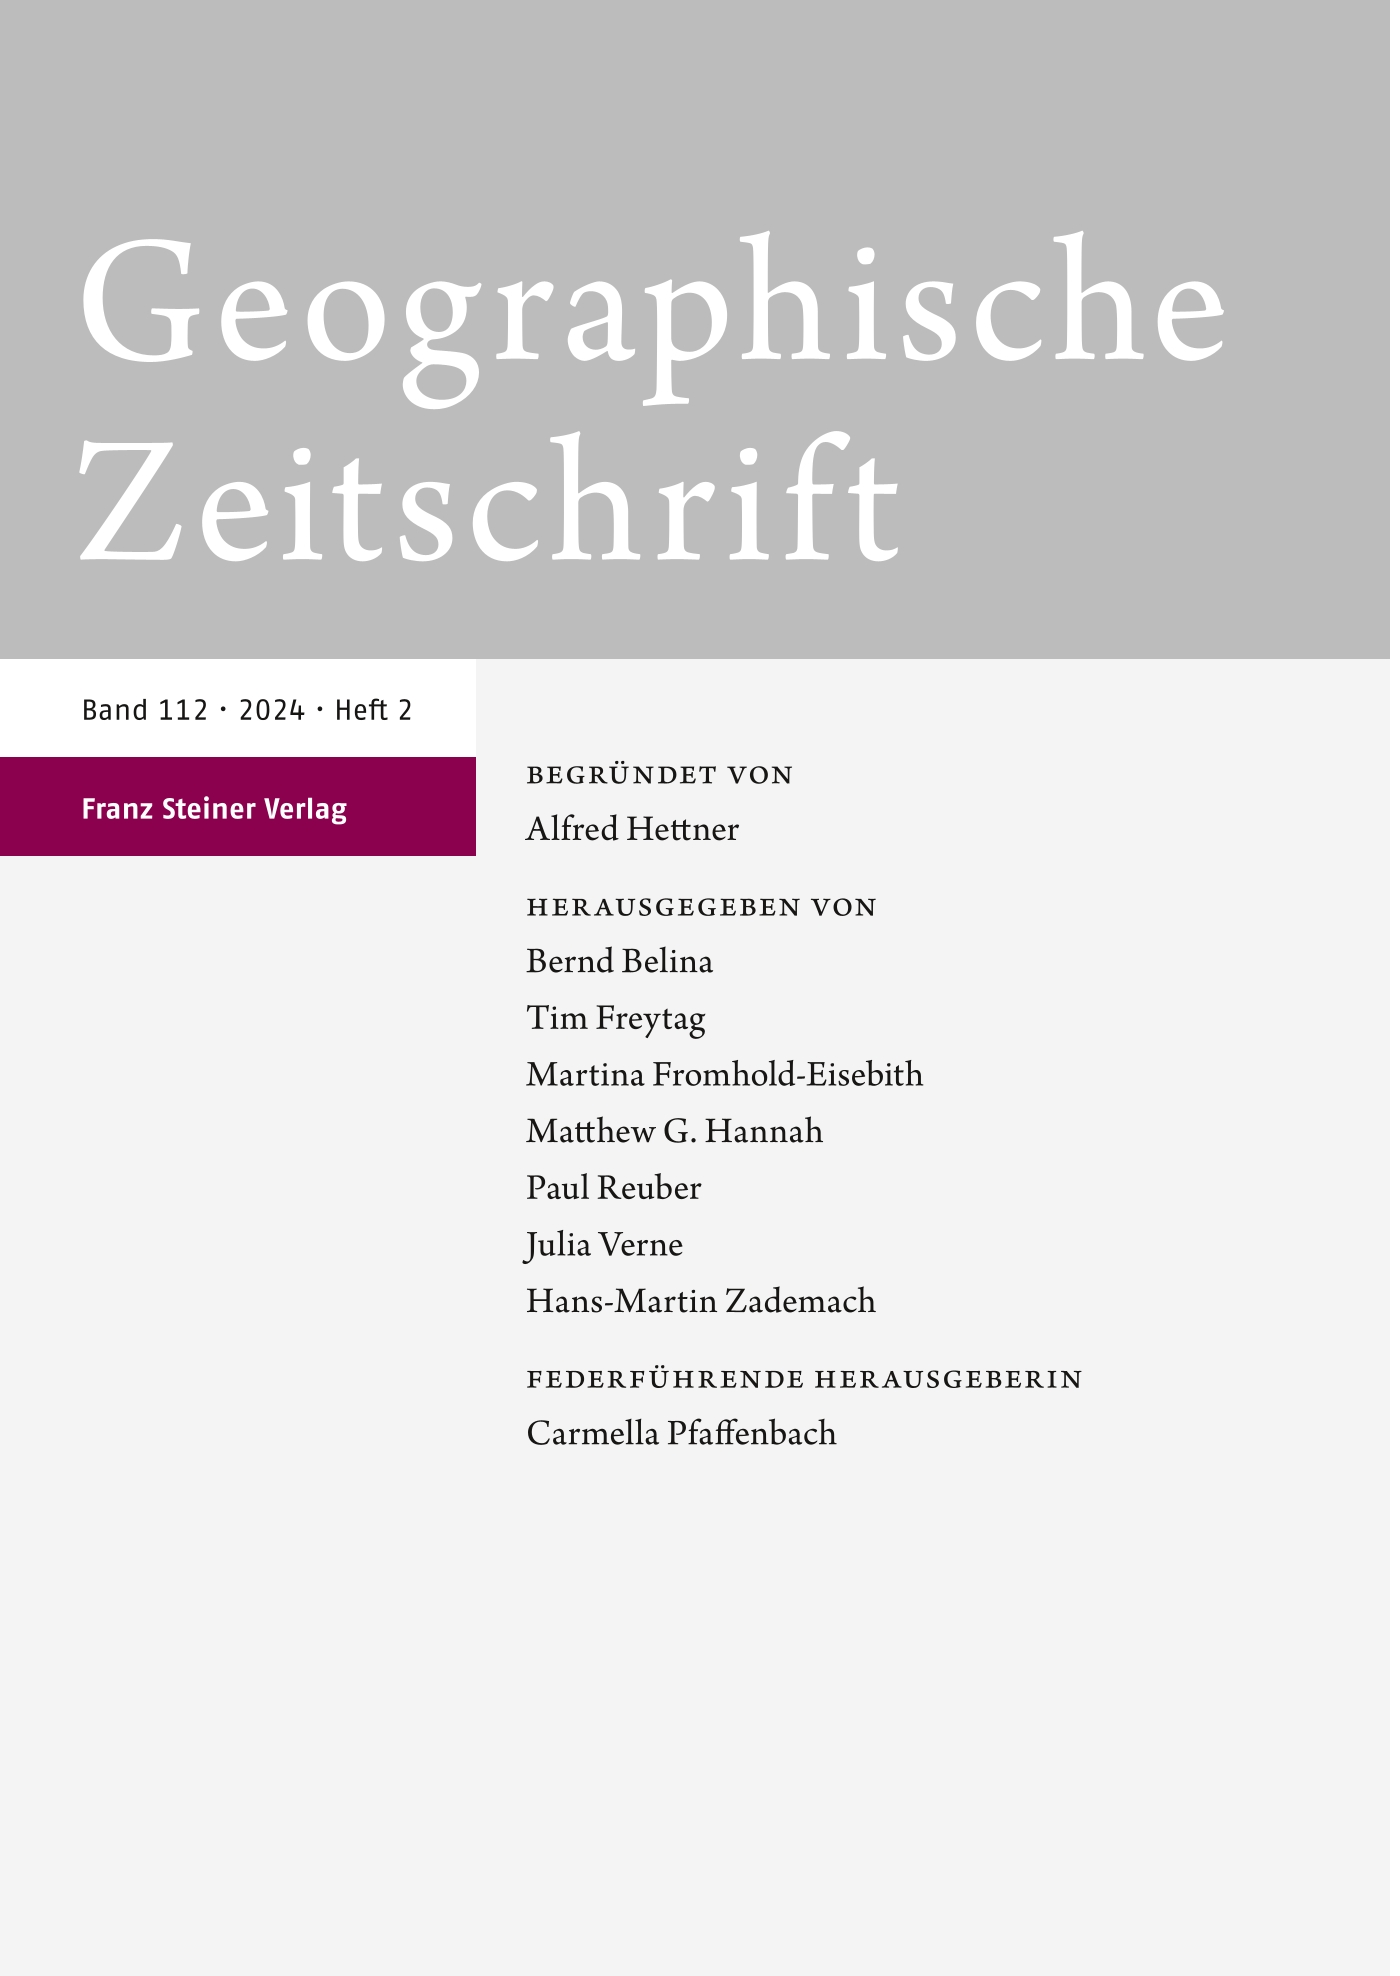 Geographische Zeitschrift - print + online